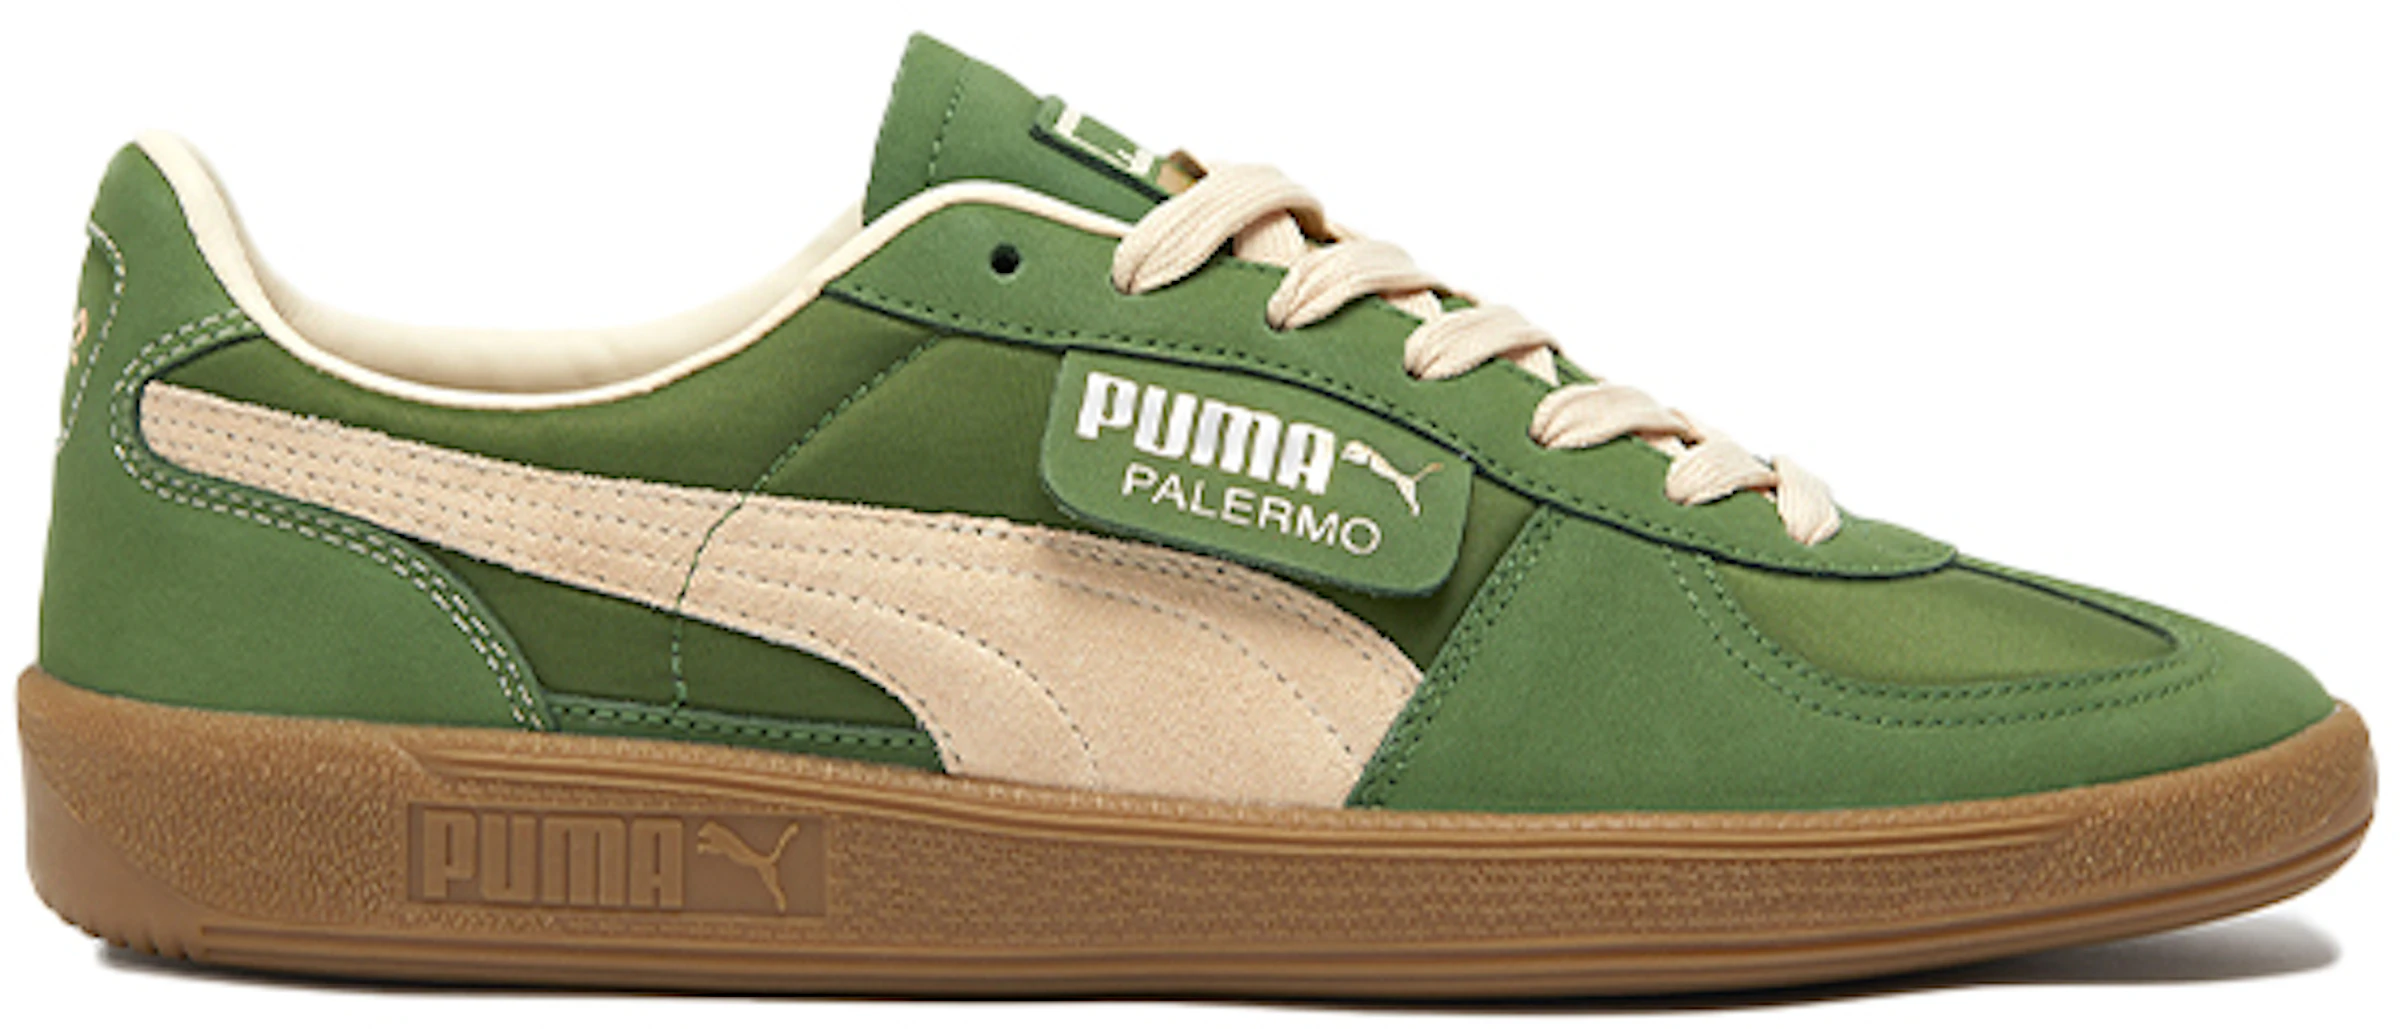 Puma Palermo The - 385239-01 - ES